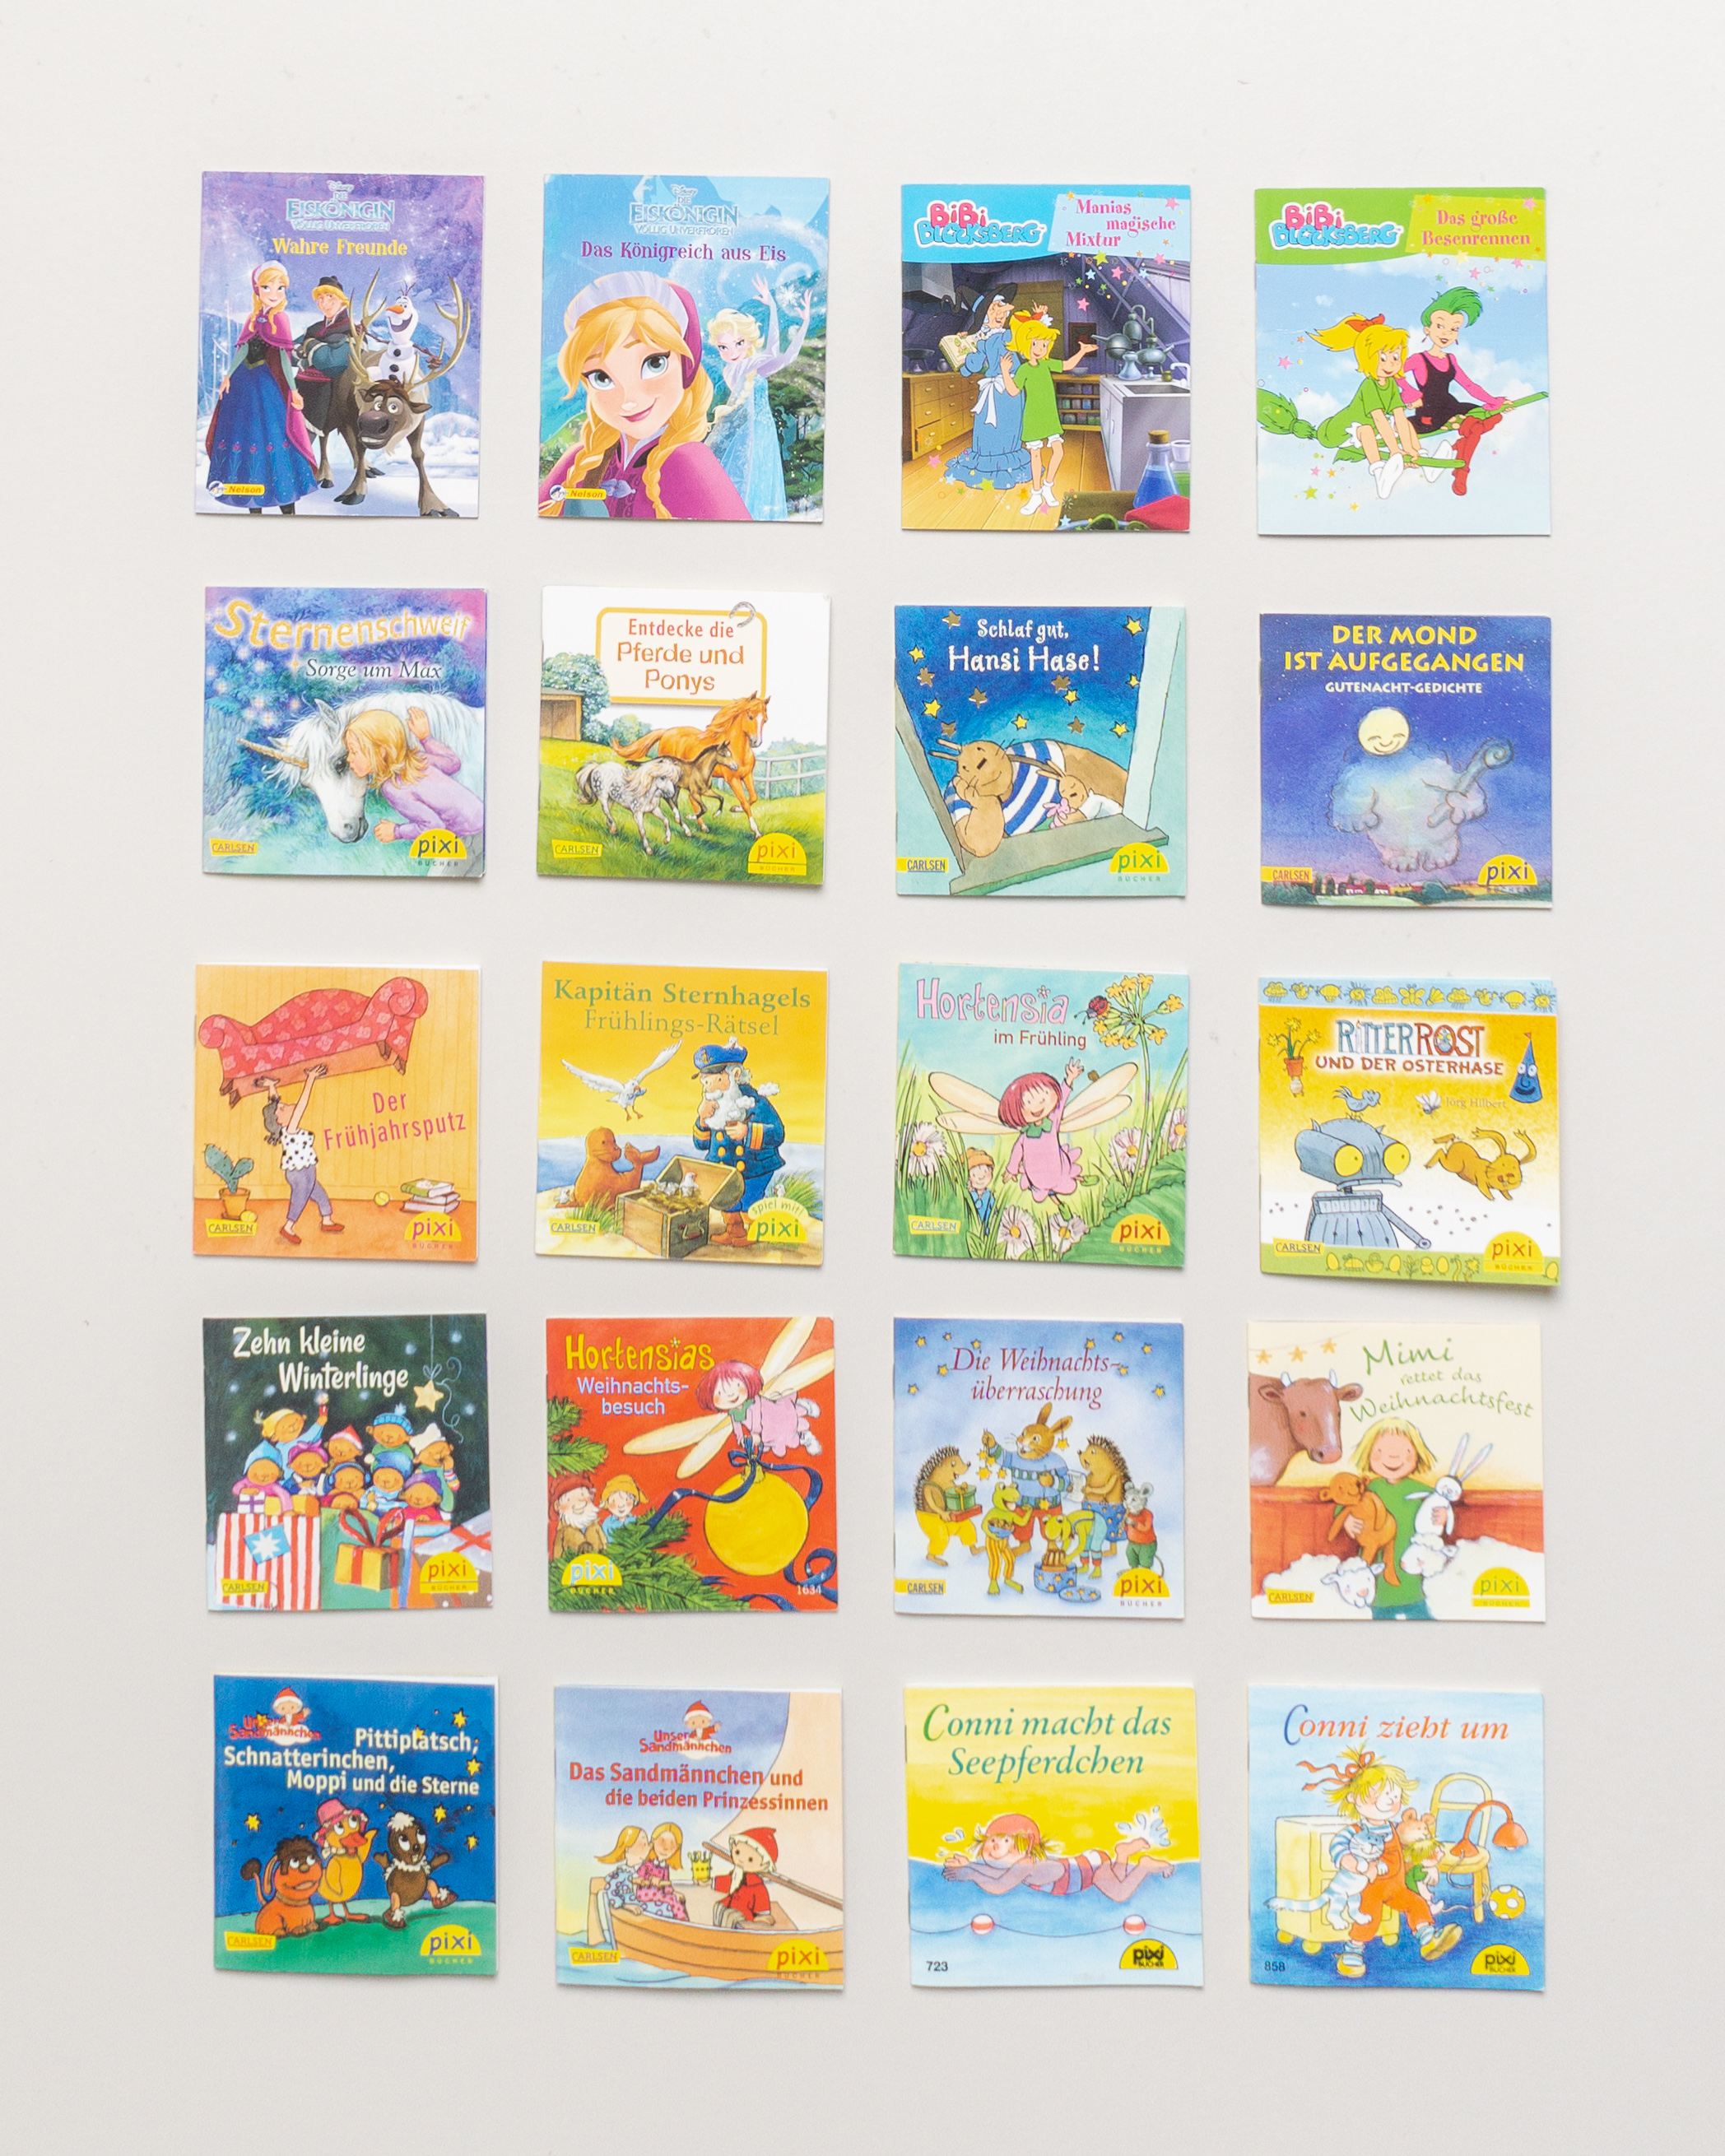 5 Pixi Bücher – Second-hand Minibücher